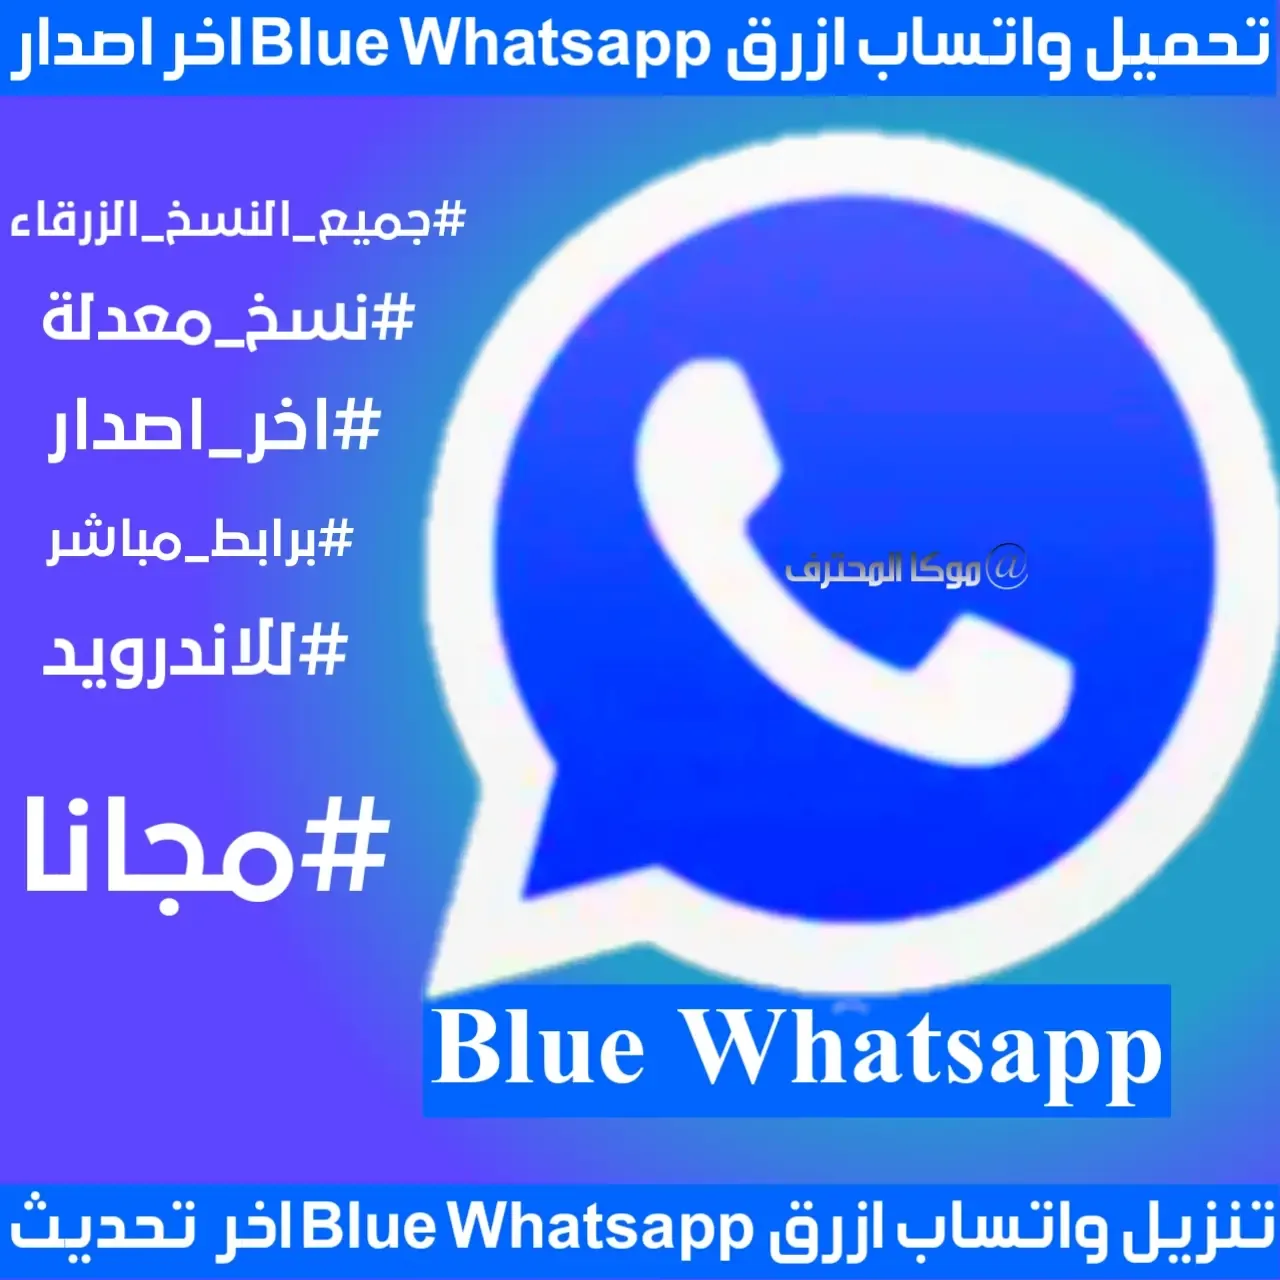 واتساب ازرق 2021 blue whatsapp تحميل واتساب ازرق تنزيل الواتساب الازرق